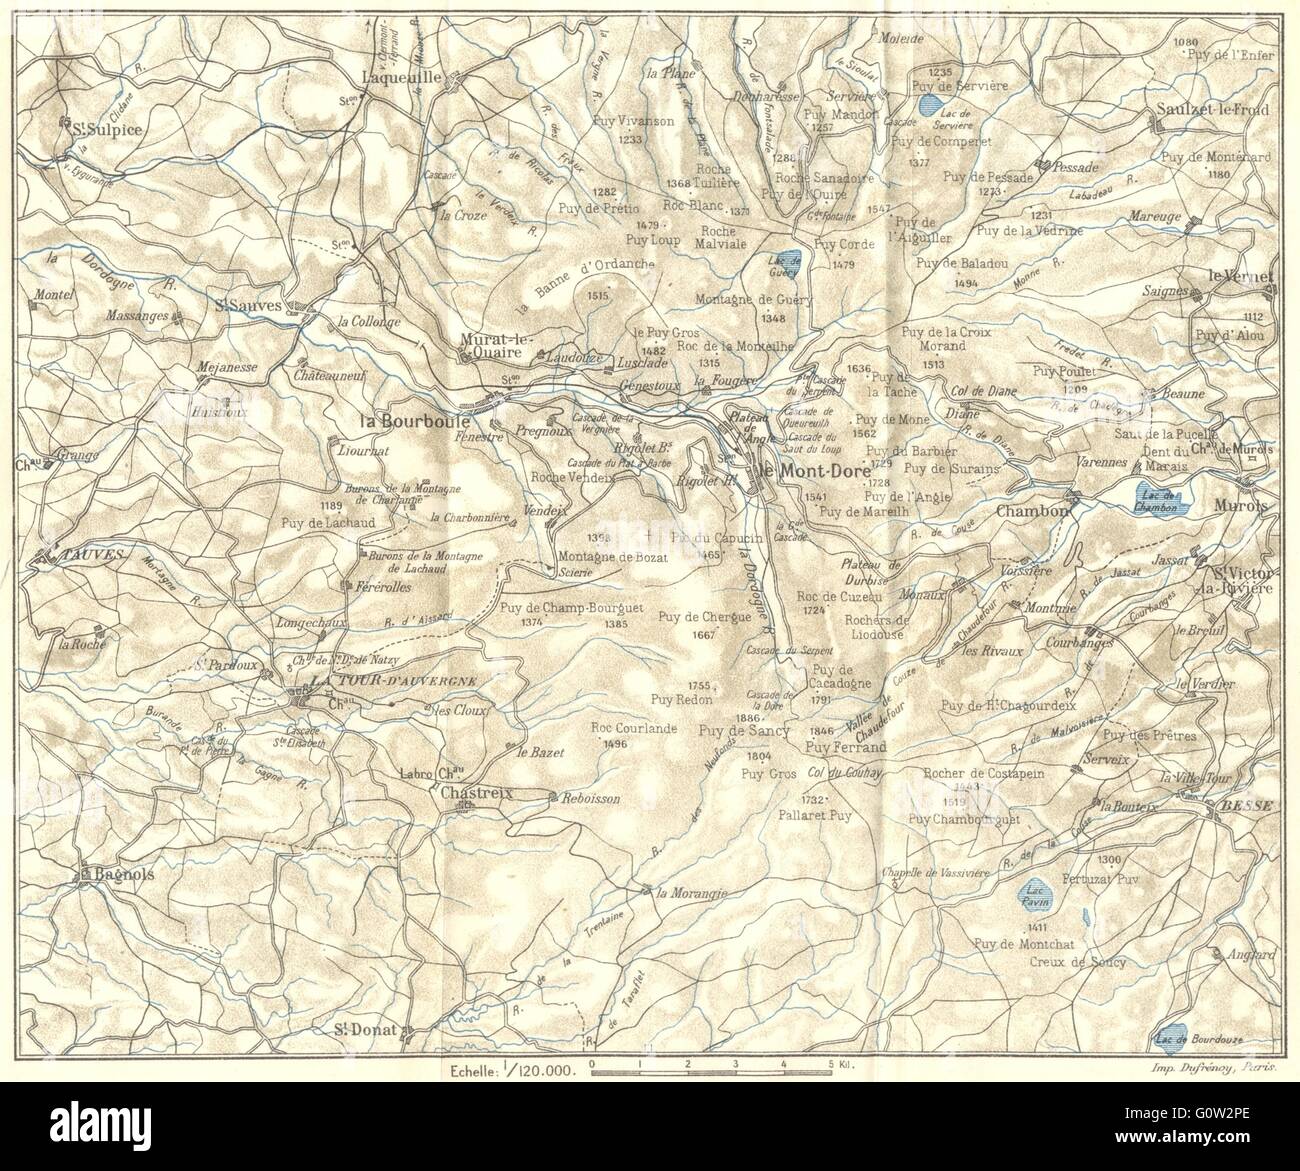 PUY-DE-DÔME: Environs de la Bourboule et du Mont-Dore, 1923 vintage map Stock Photo